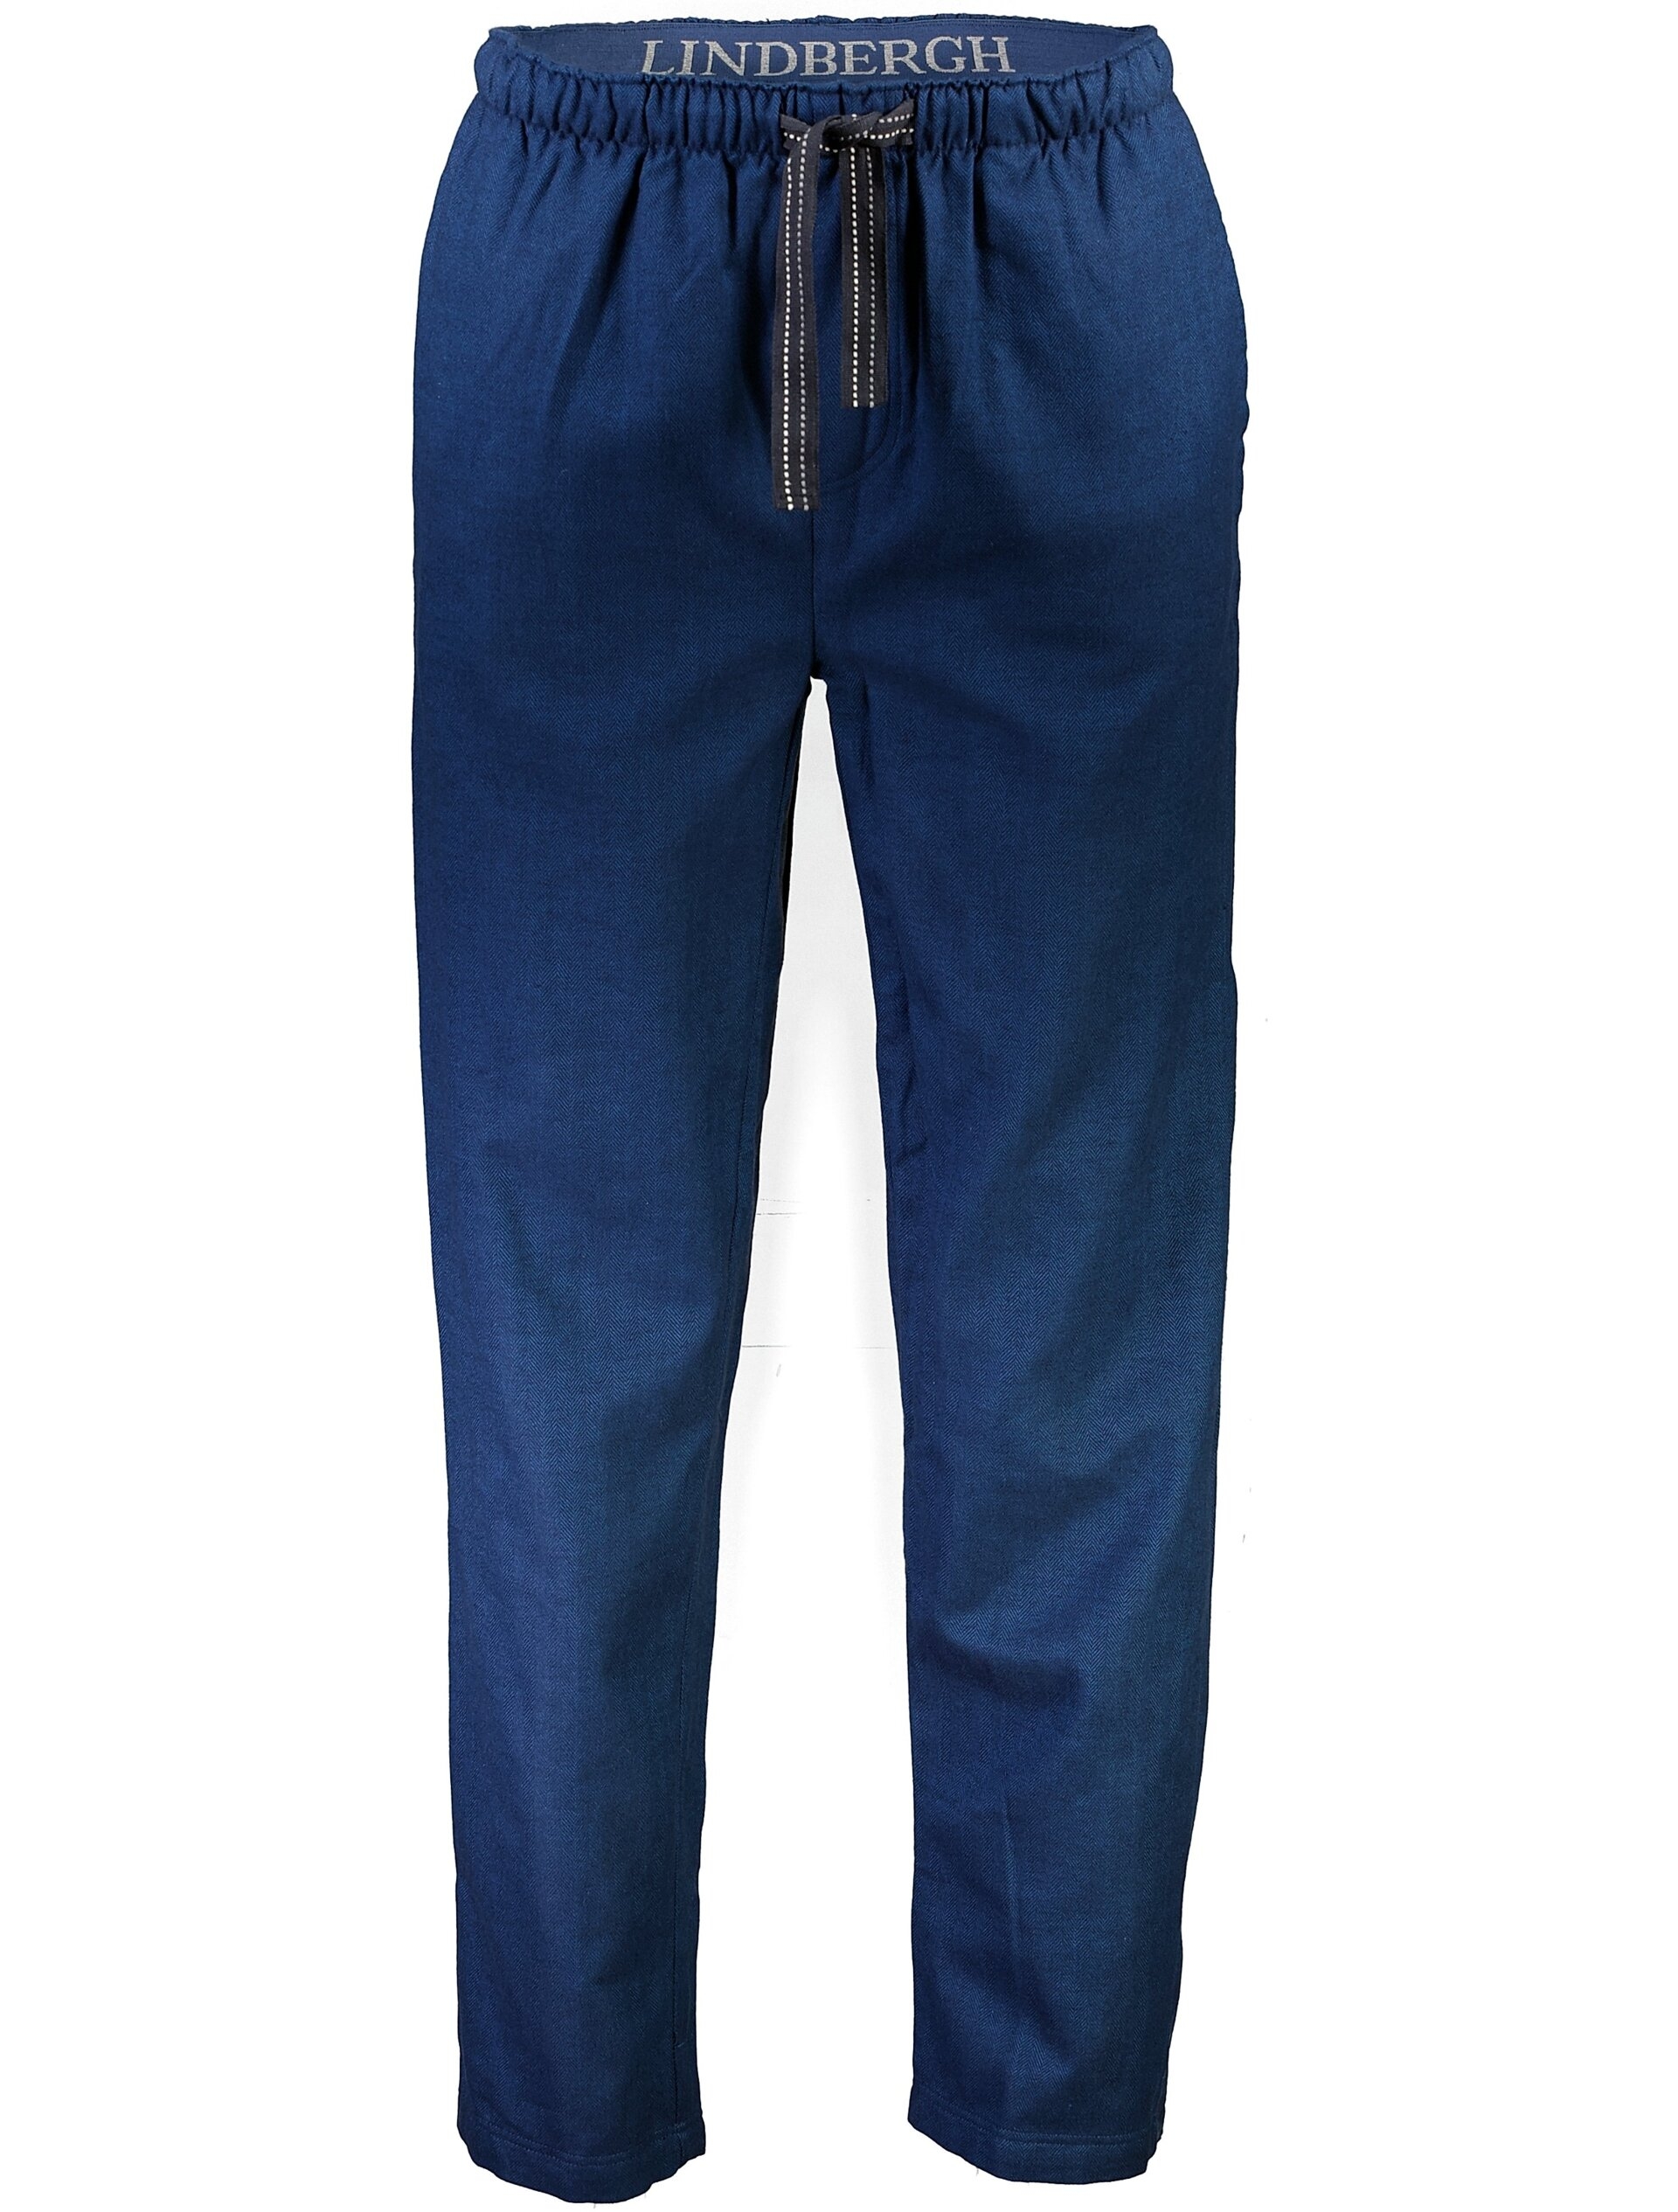 Lindbergh Pyjamas blue / navy